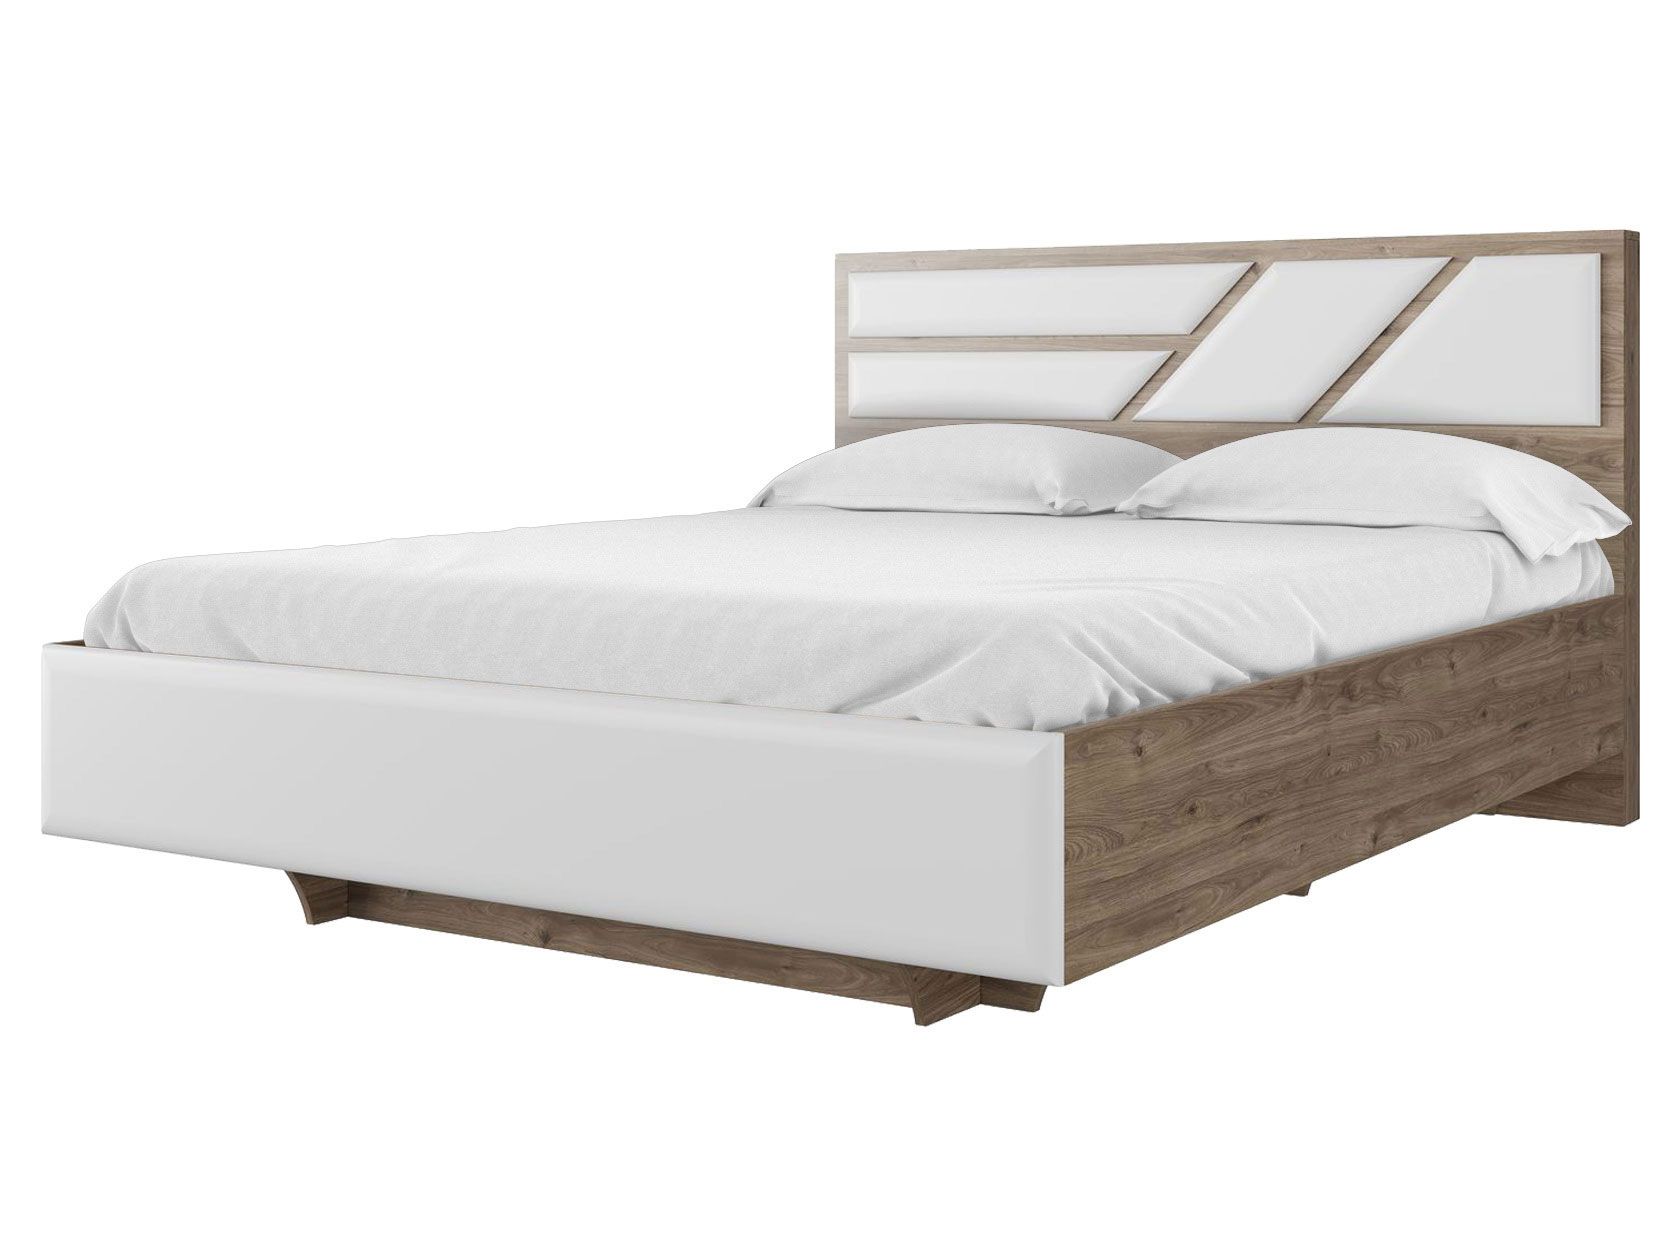 Двуспальная кровать Престиж 160х200 см Ami mebel отзывы